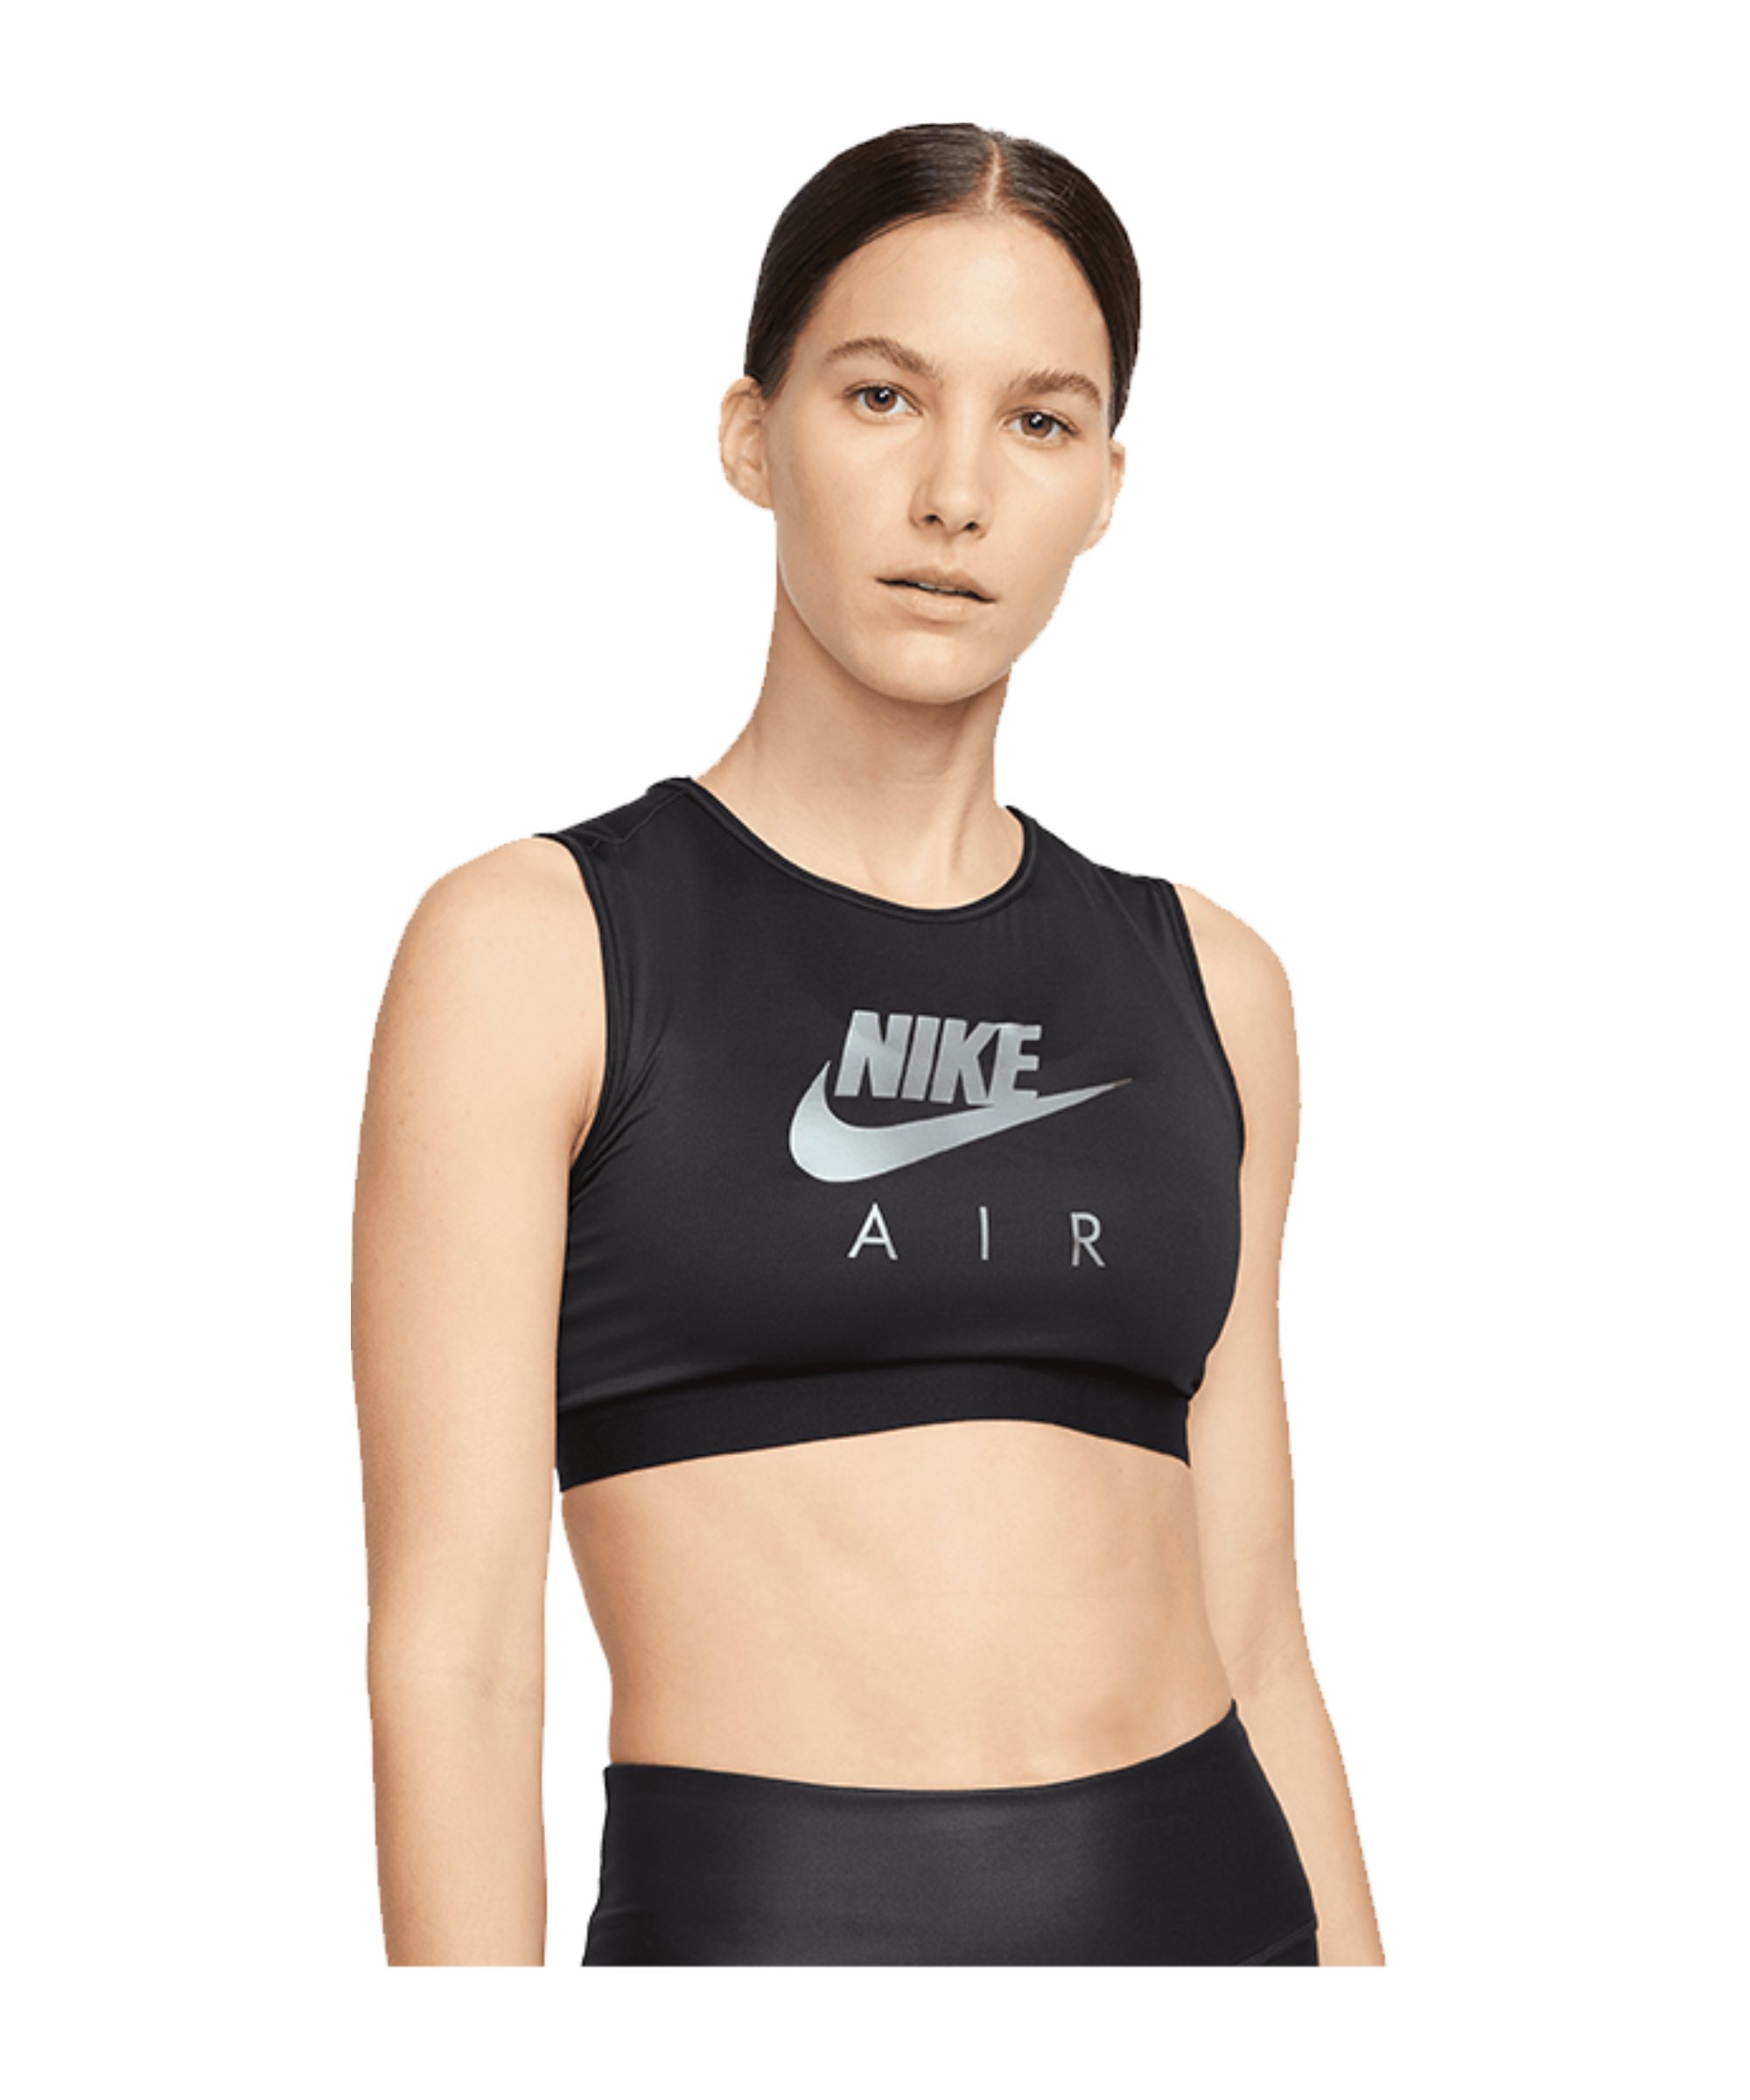 Nike Air High-Neck medSup Sport-BH Damen F010 - schwarz